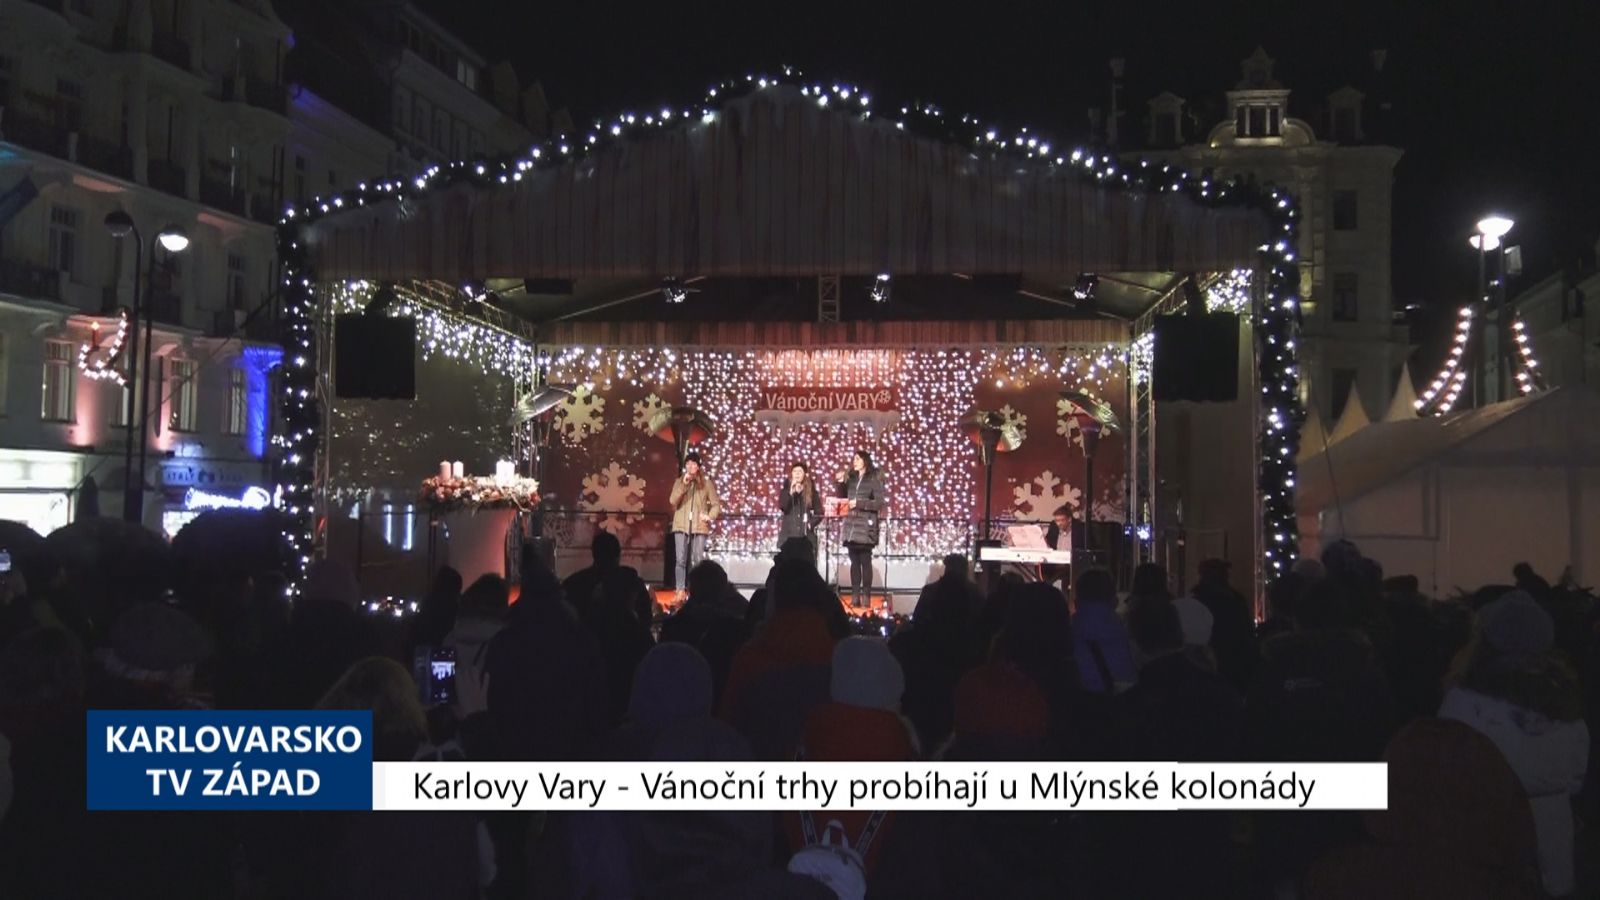 Karlovy Vary: Vánoční trhy probíhají u Mlýnské kolonády (TV Západ)